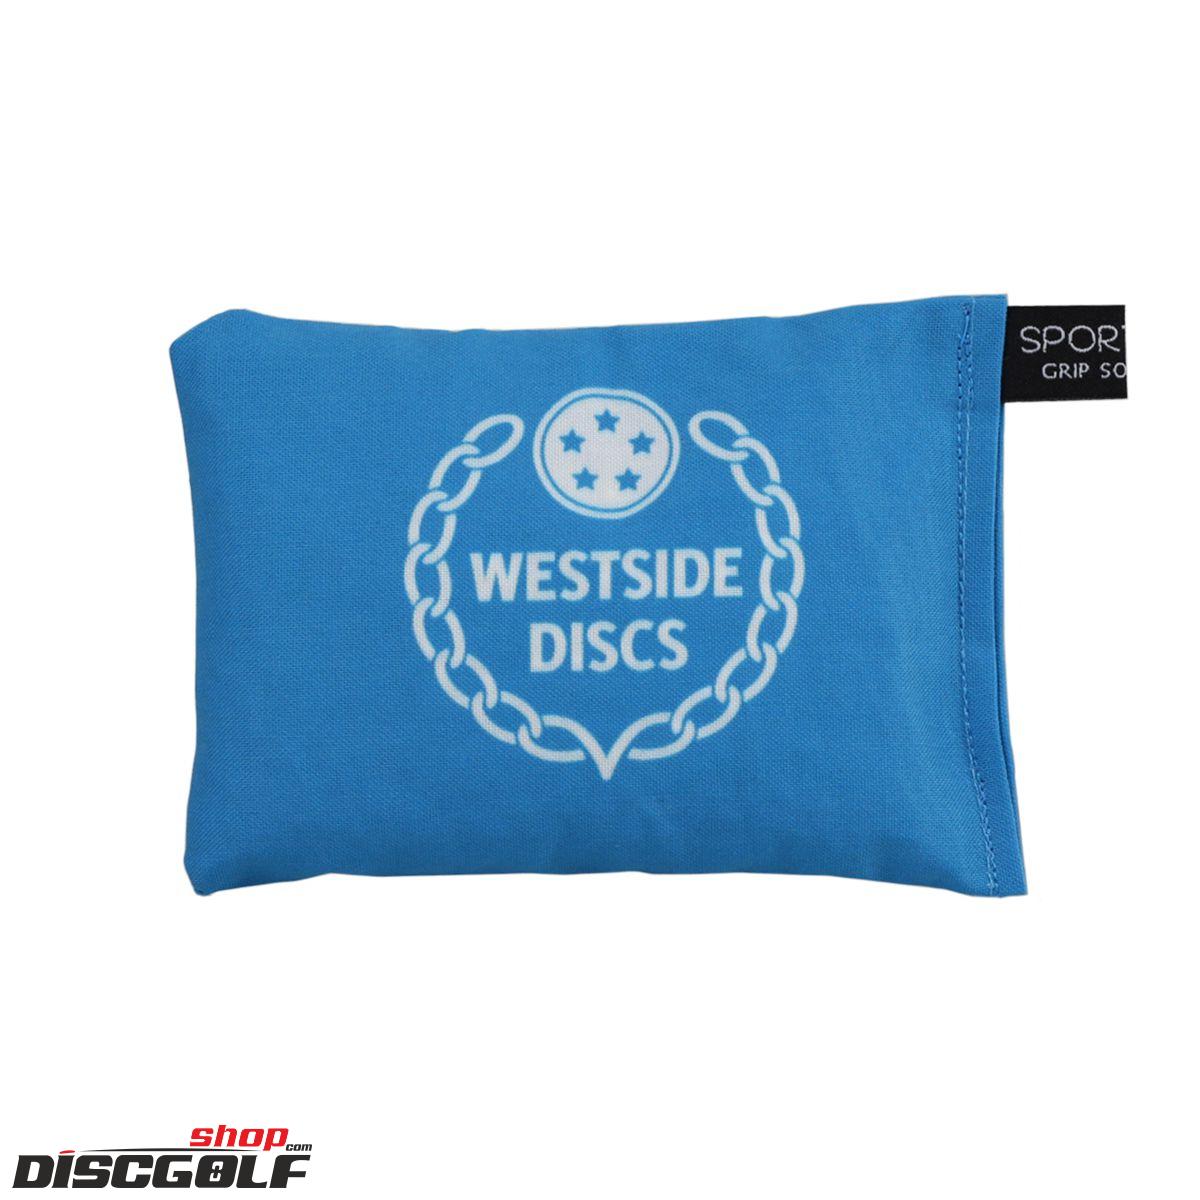 Westside Sportsack - Birdie Bag Modrá/Blue (discgolf)